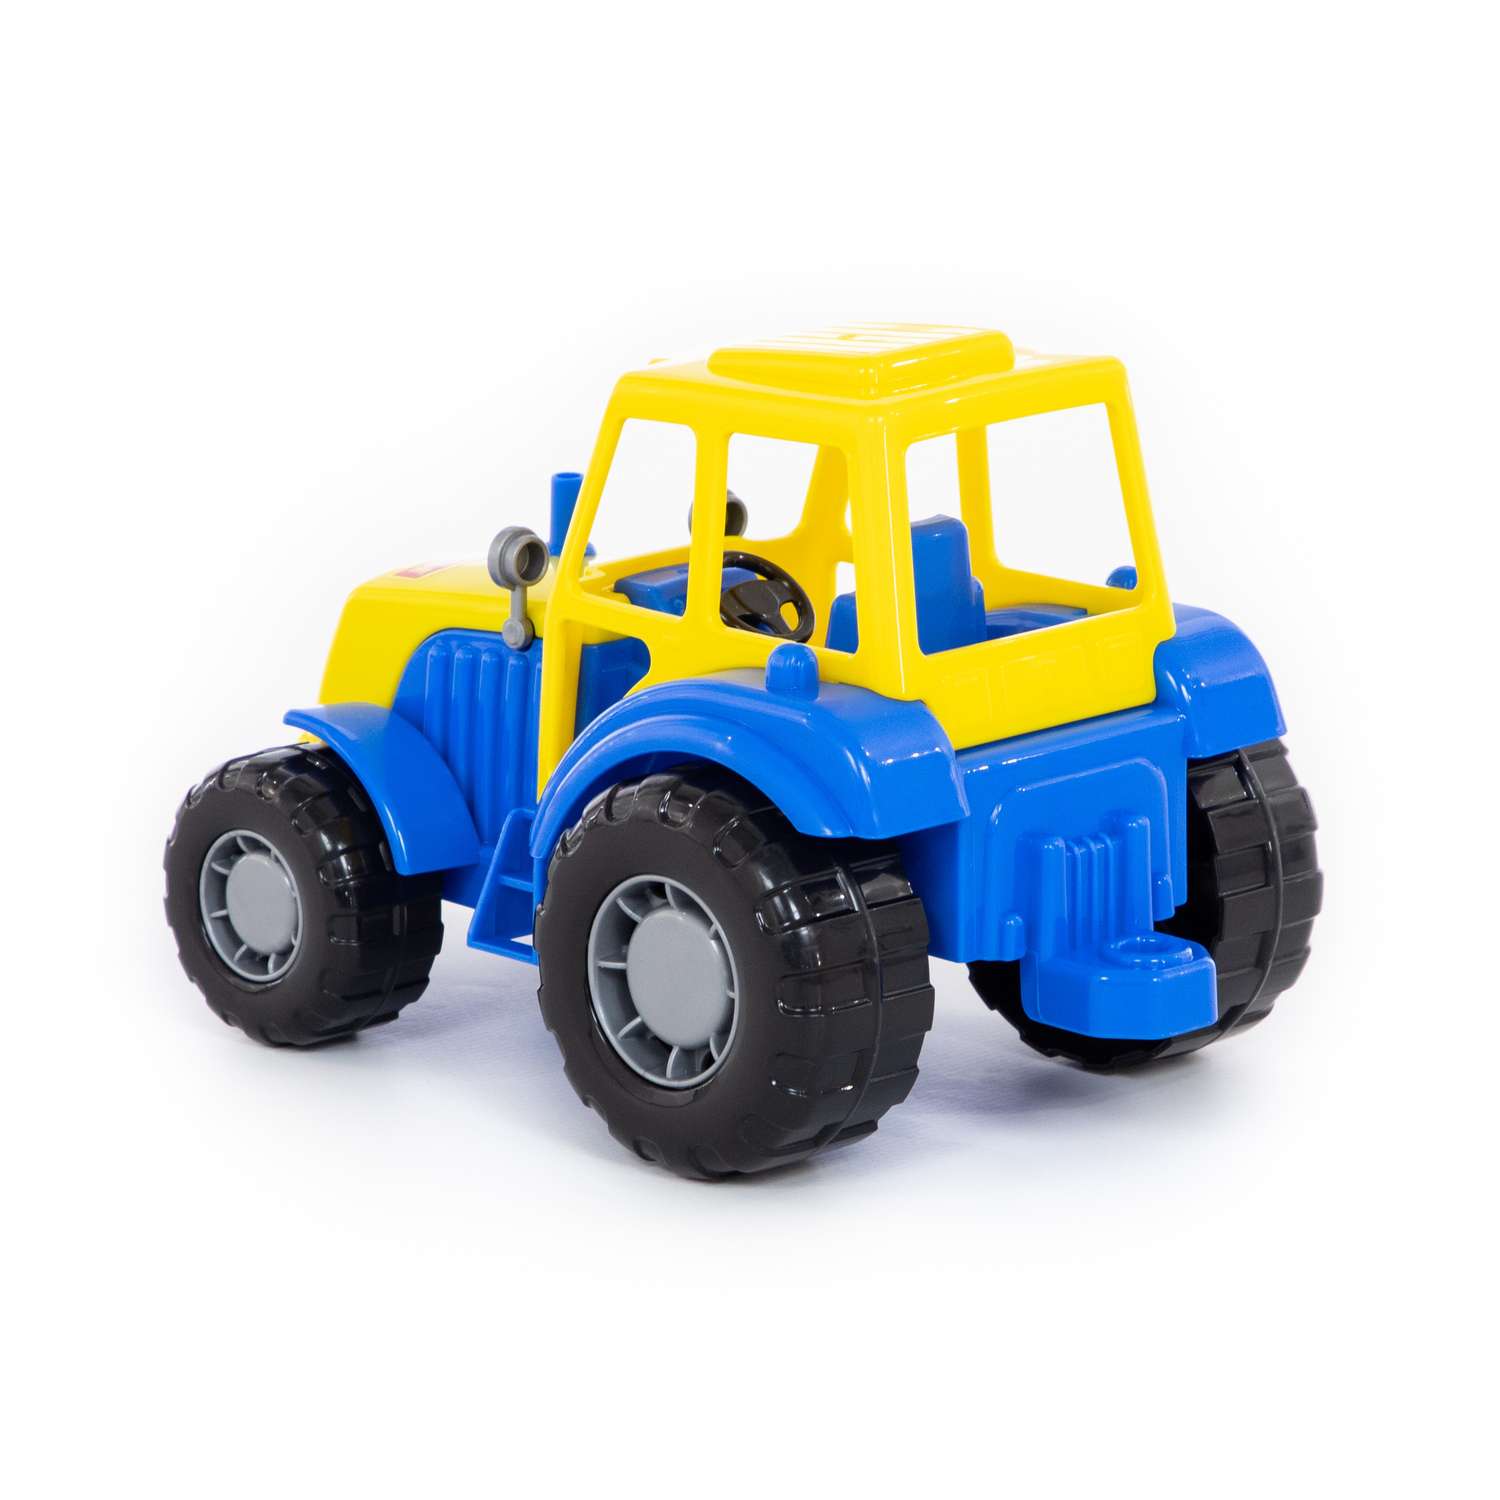 Трактор Полесье Мастер синий с желтым 35240/3 - фото 5